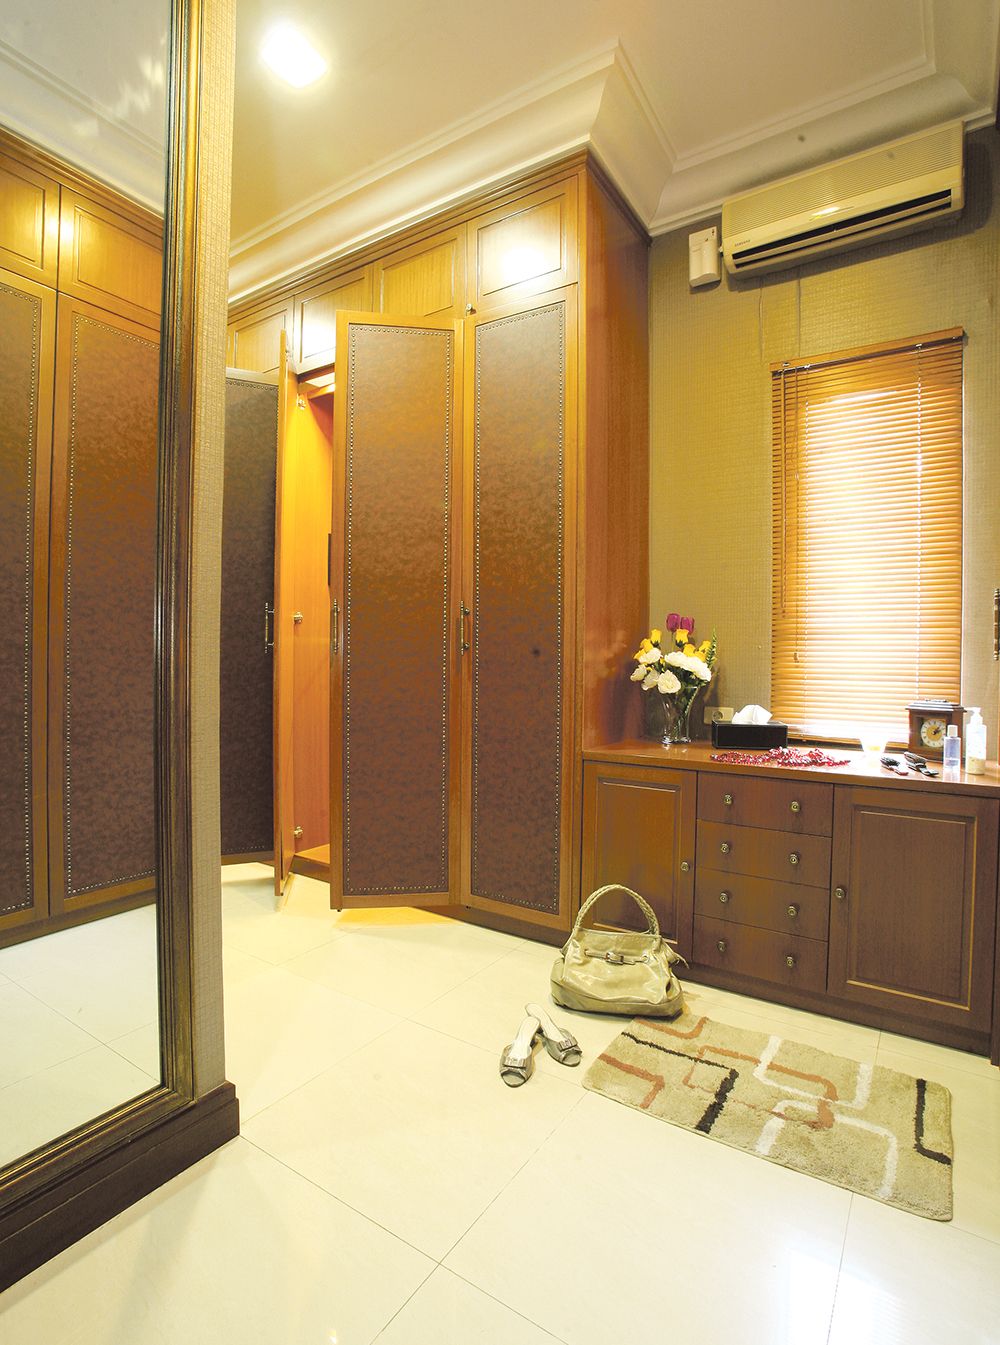 Jika Anda penggemar nuansa klasik, melapisi pintu lemari dengan bahan kulit dapat memberikan kesan klasik yang mewah dan elegan.